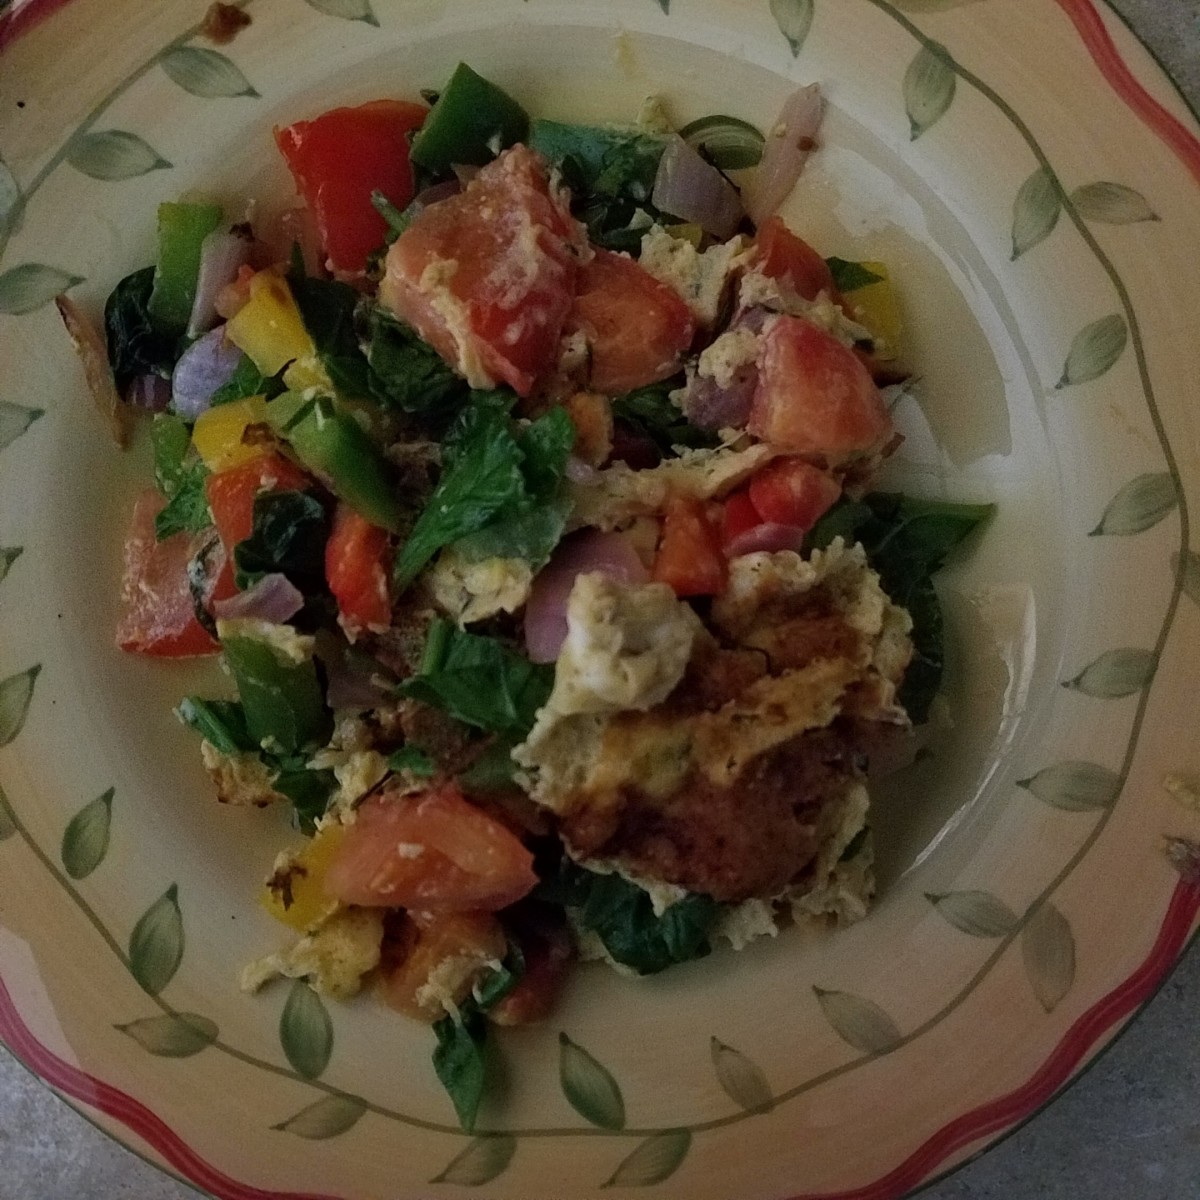 Delicious colorful garden veggie omelet for breakfast.  Bon appetit!